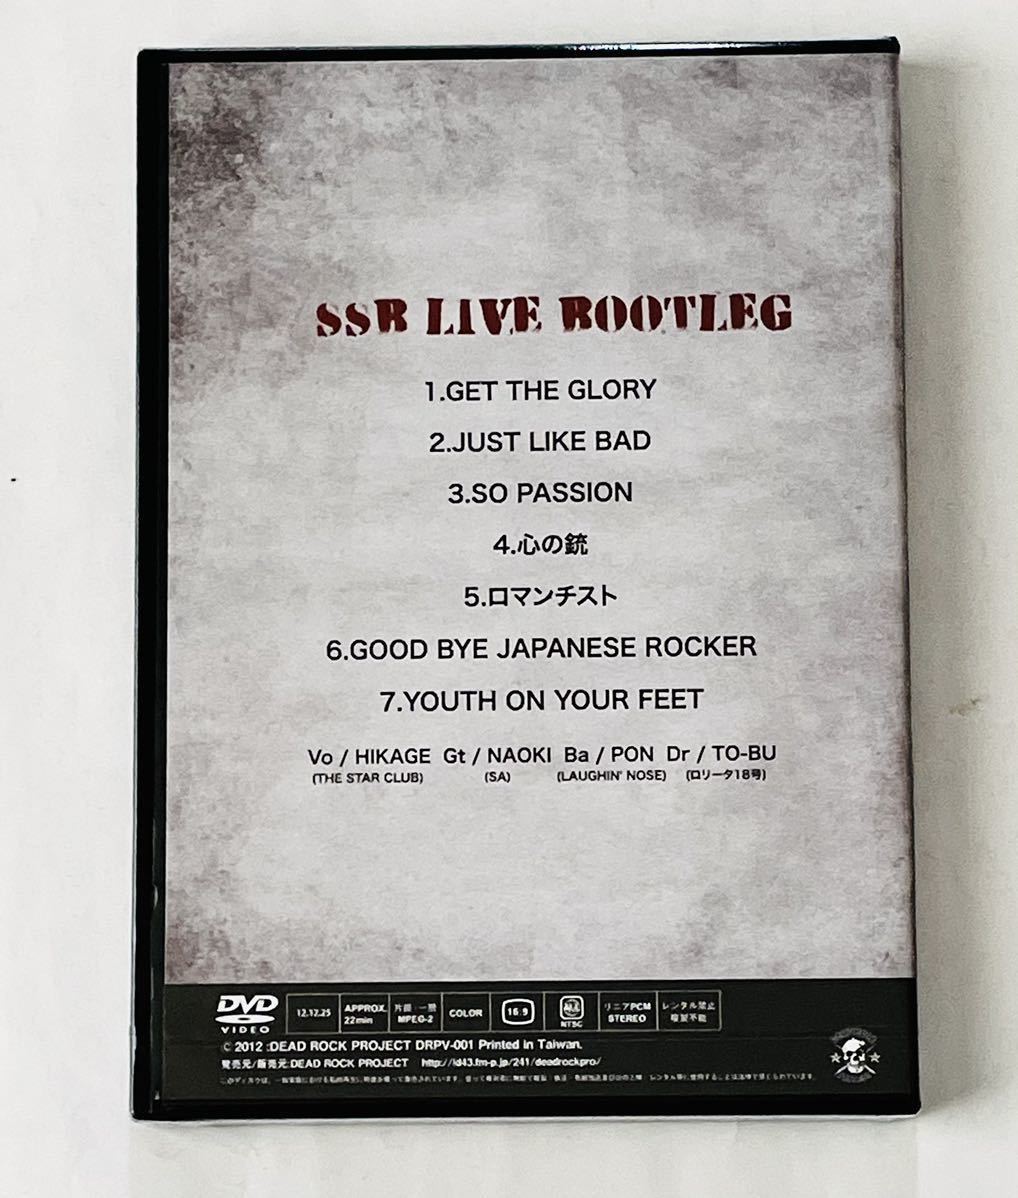  новый товар нераспечатанный!J-PUNK DVD* SSB*LIVE BOOTLEGla ласты нос / Star Club /SAese-/COBRA